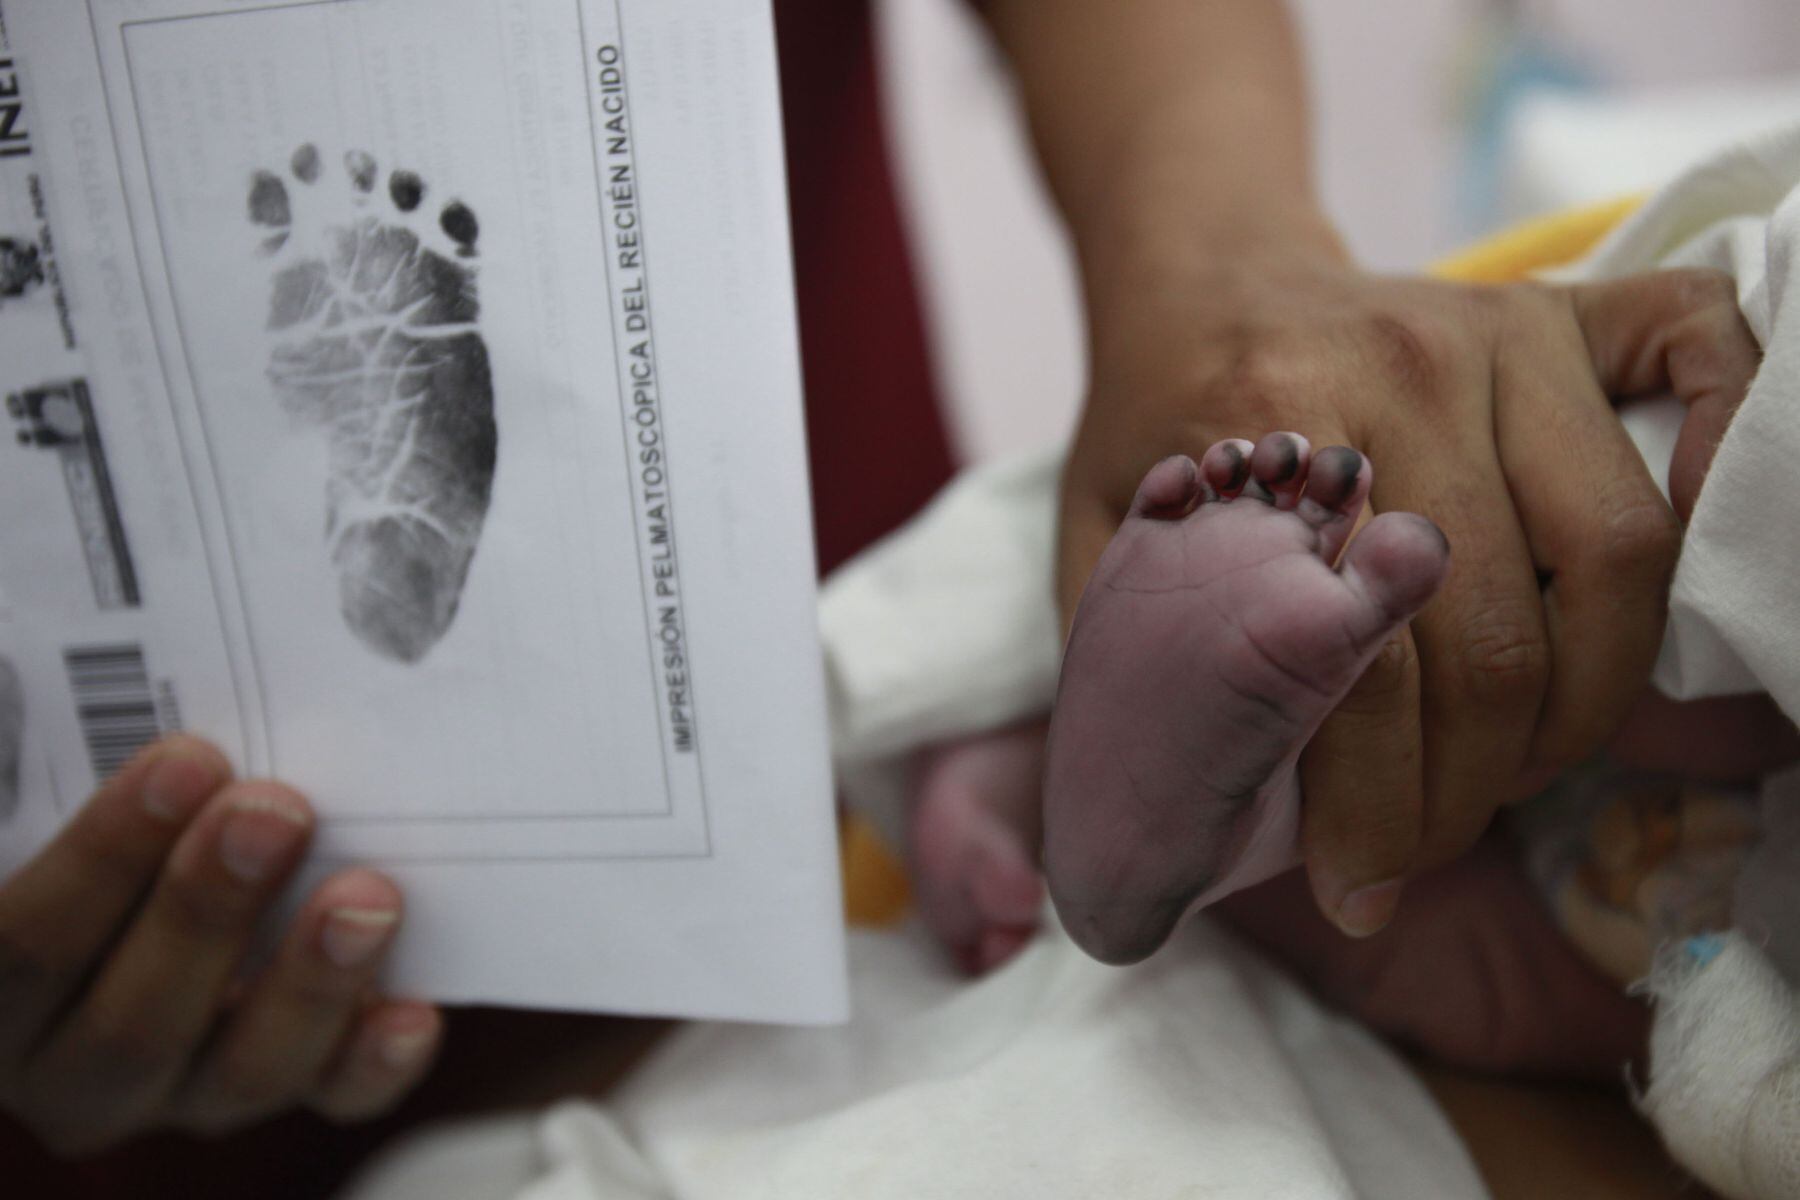 Reniec: revisa aquí cómo inscribir el nacimiento de tu bebe virtual o presencialmente